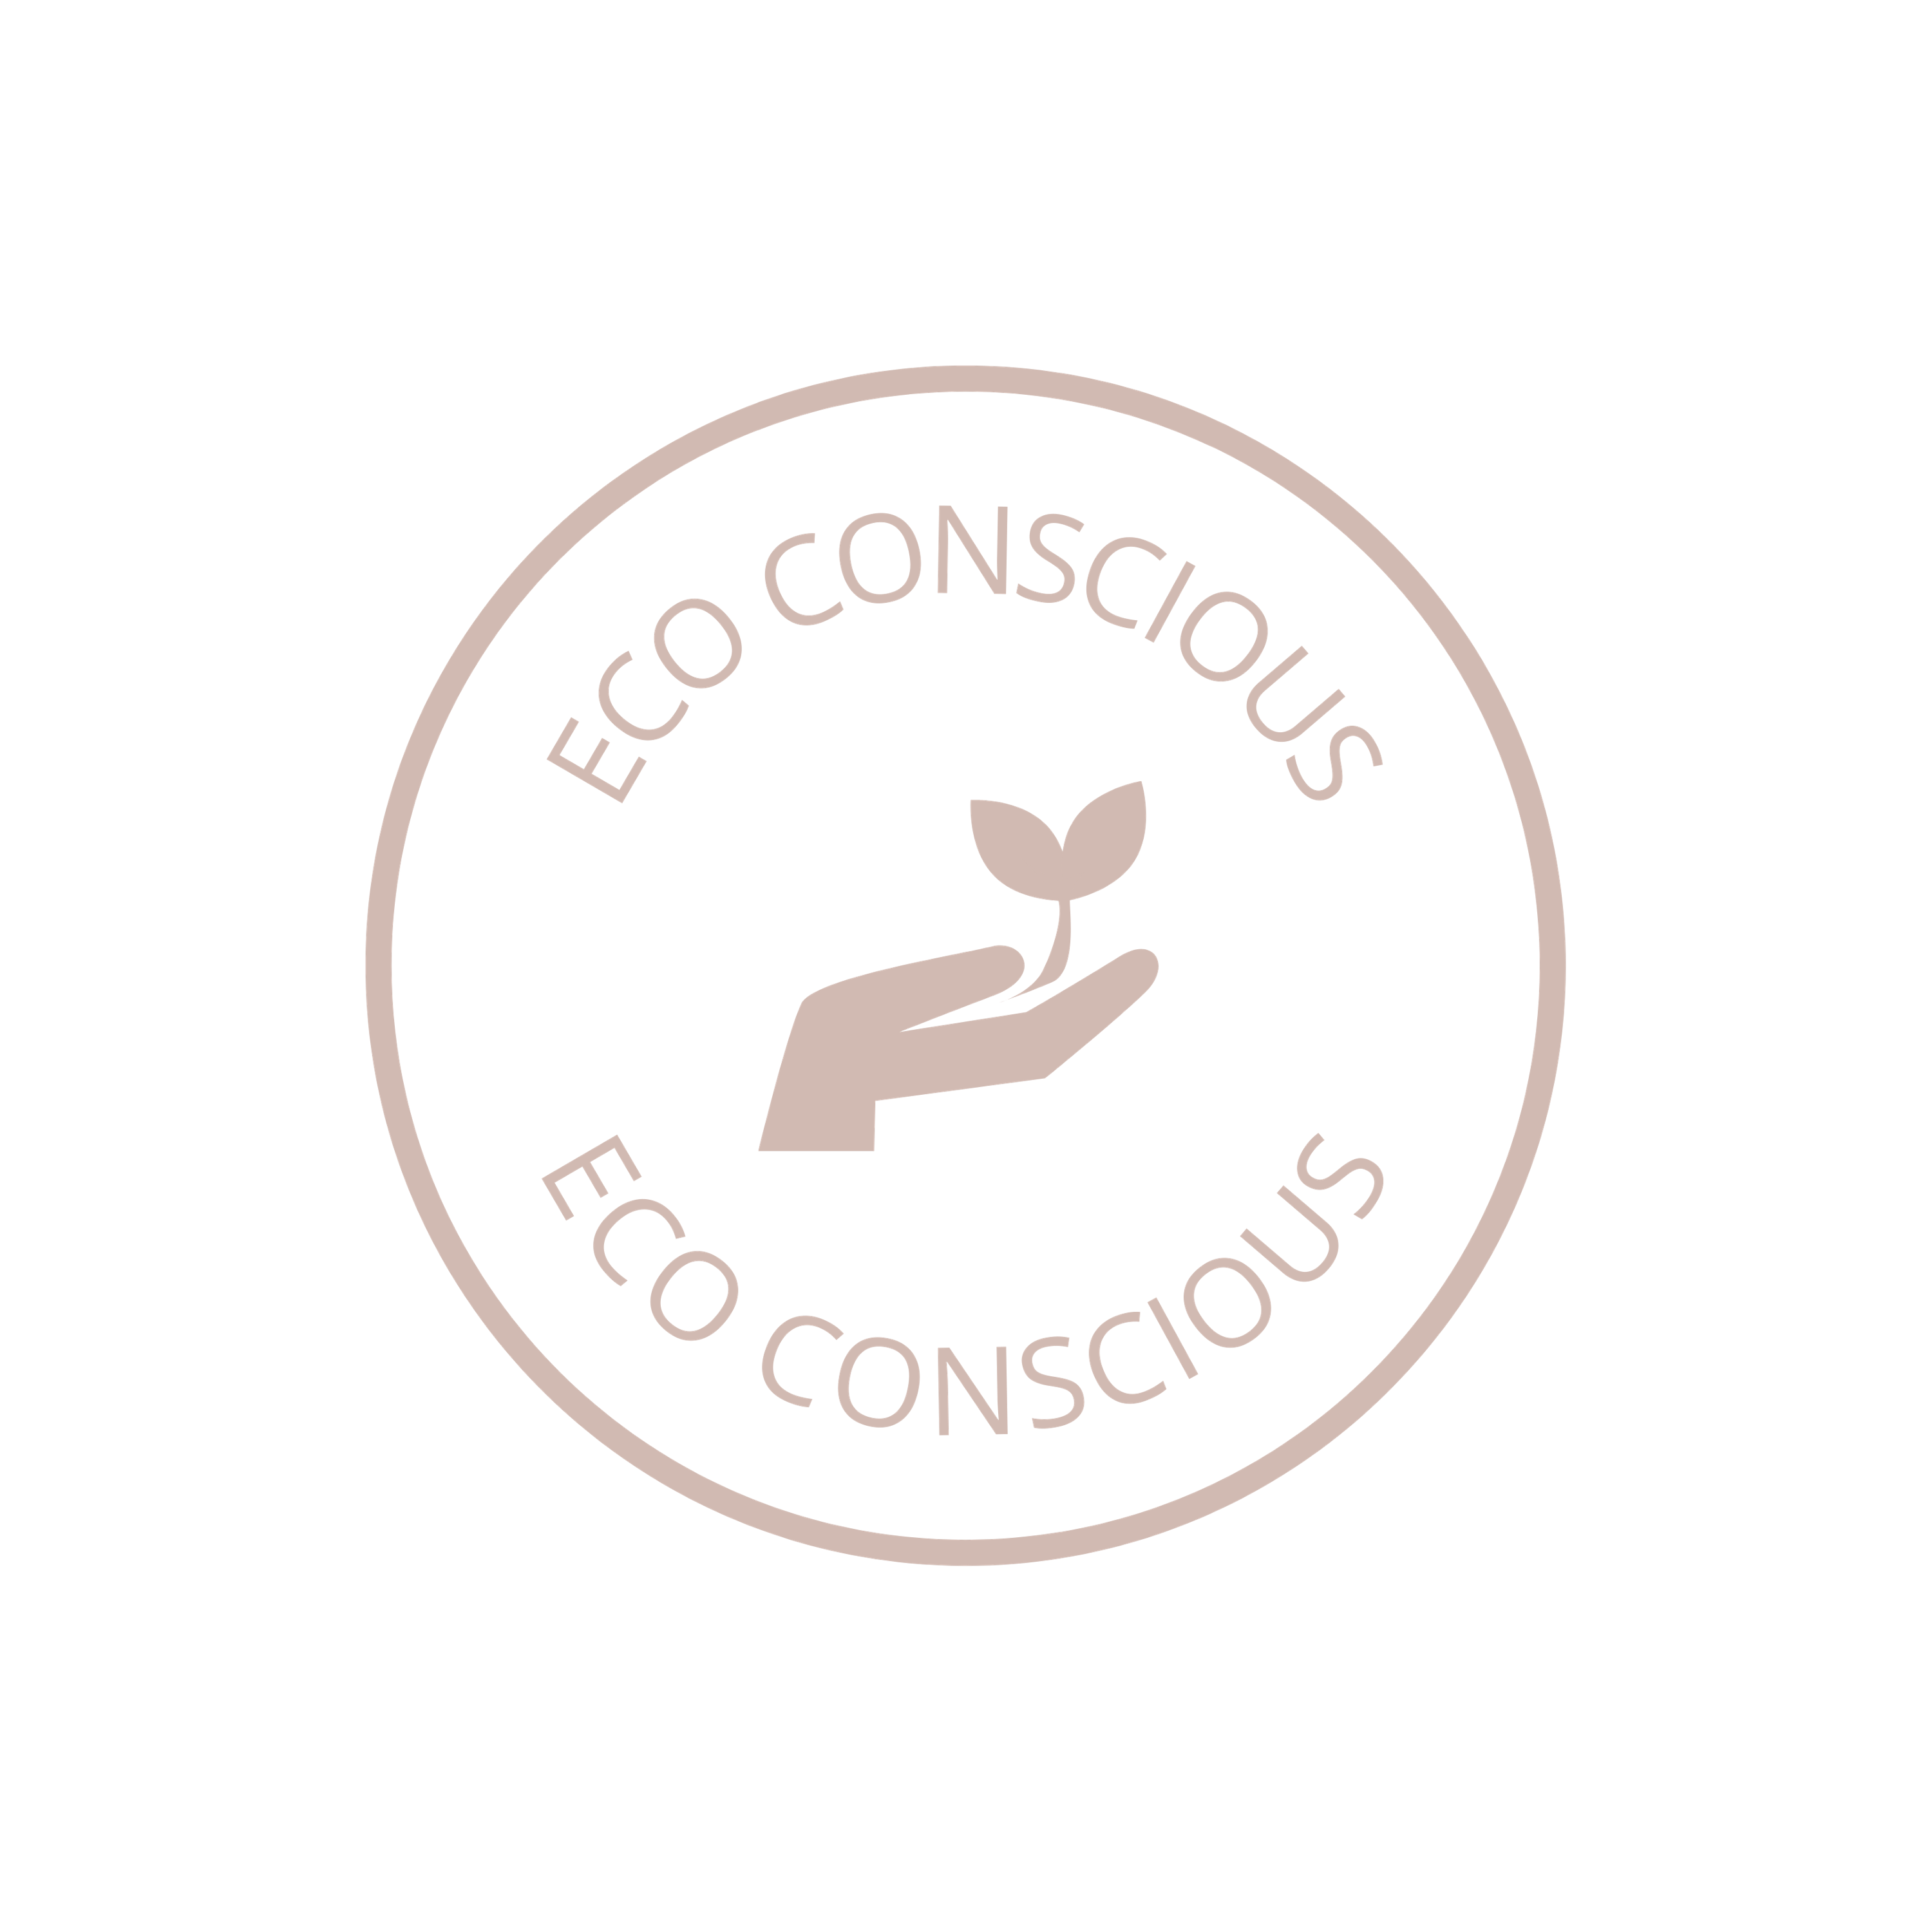 Eco conscious logo